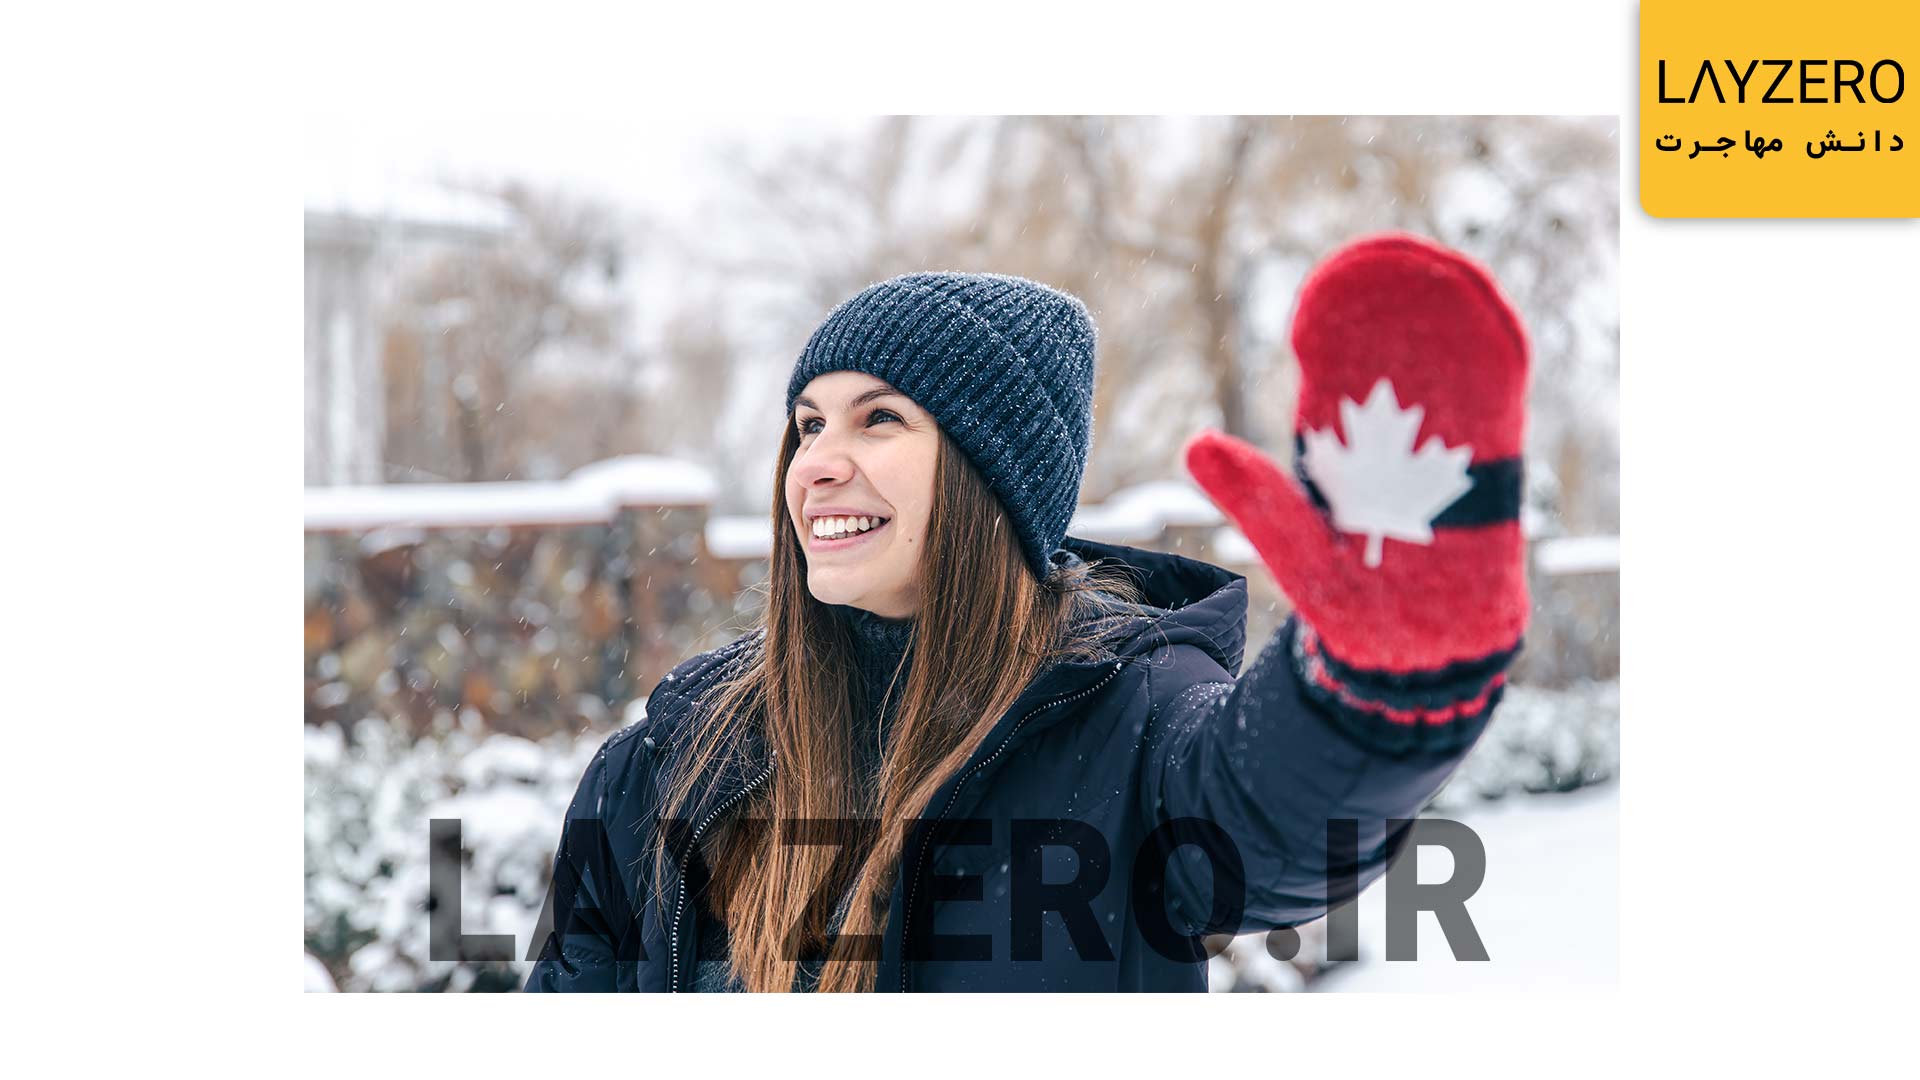 ابتدا توضیح می‌دهیم که ویزای توریستی کانادا چیست، مدت اعتبار آن چقدر است، مراحل دریافت و شرایط ویزای توریستی کانادا را توضیح خواهیم داد و در آخر نحوه تمدید و تبدیل ویزای توریستی کانادا برای اقامت و کار در این کشور را توضیح خواهیم داد.